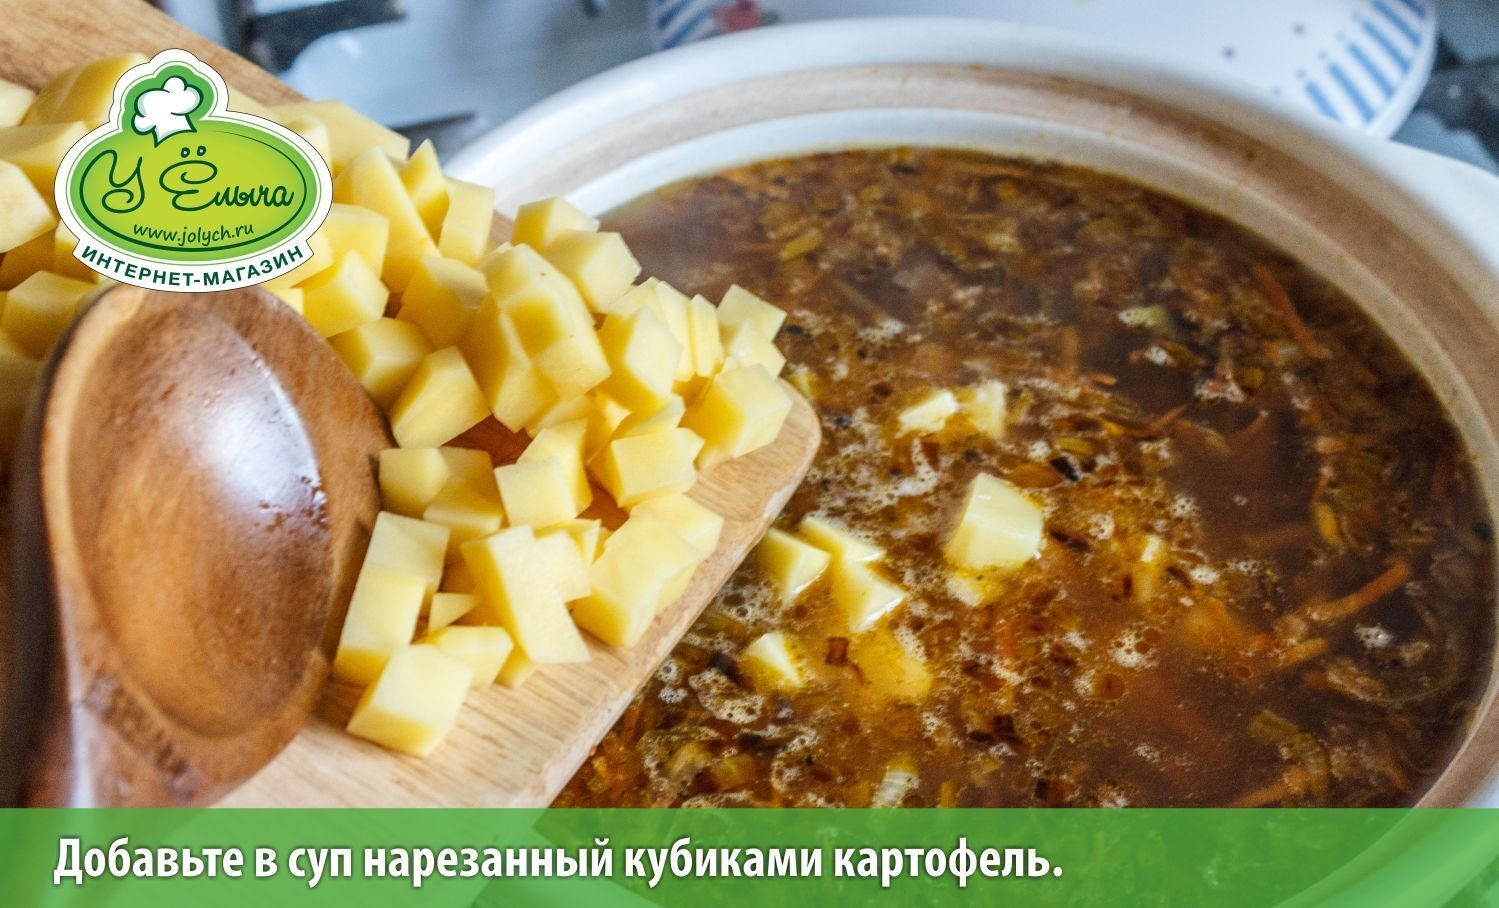 Добавьте в суп нарезанный кубиками картофель. (грибной суп с лисичками рецепт)